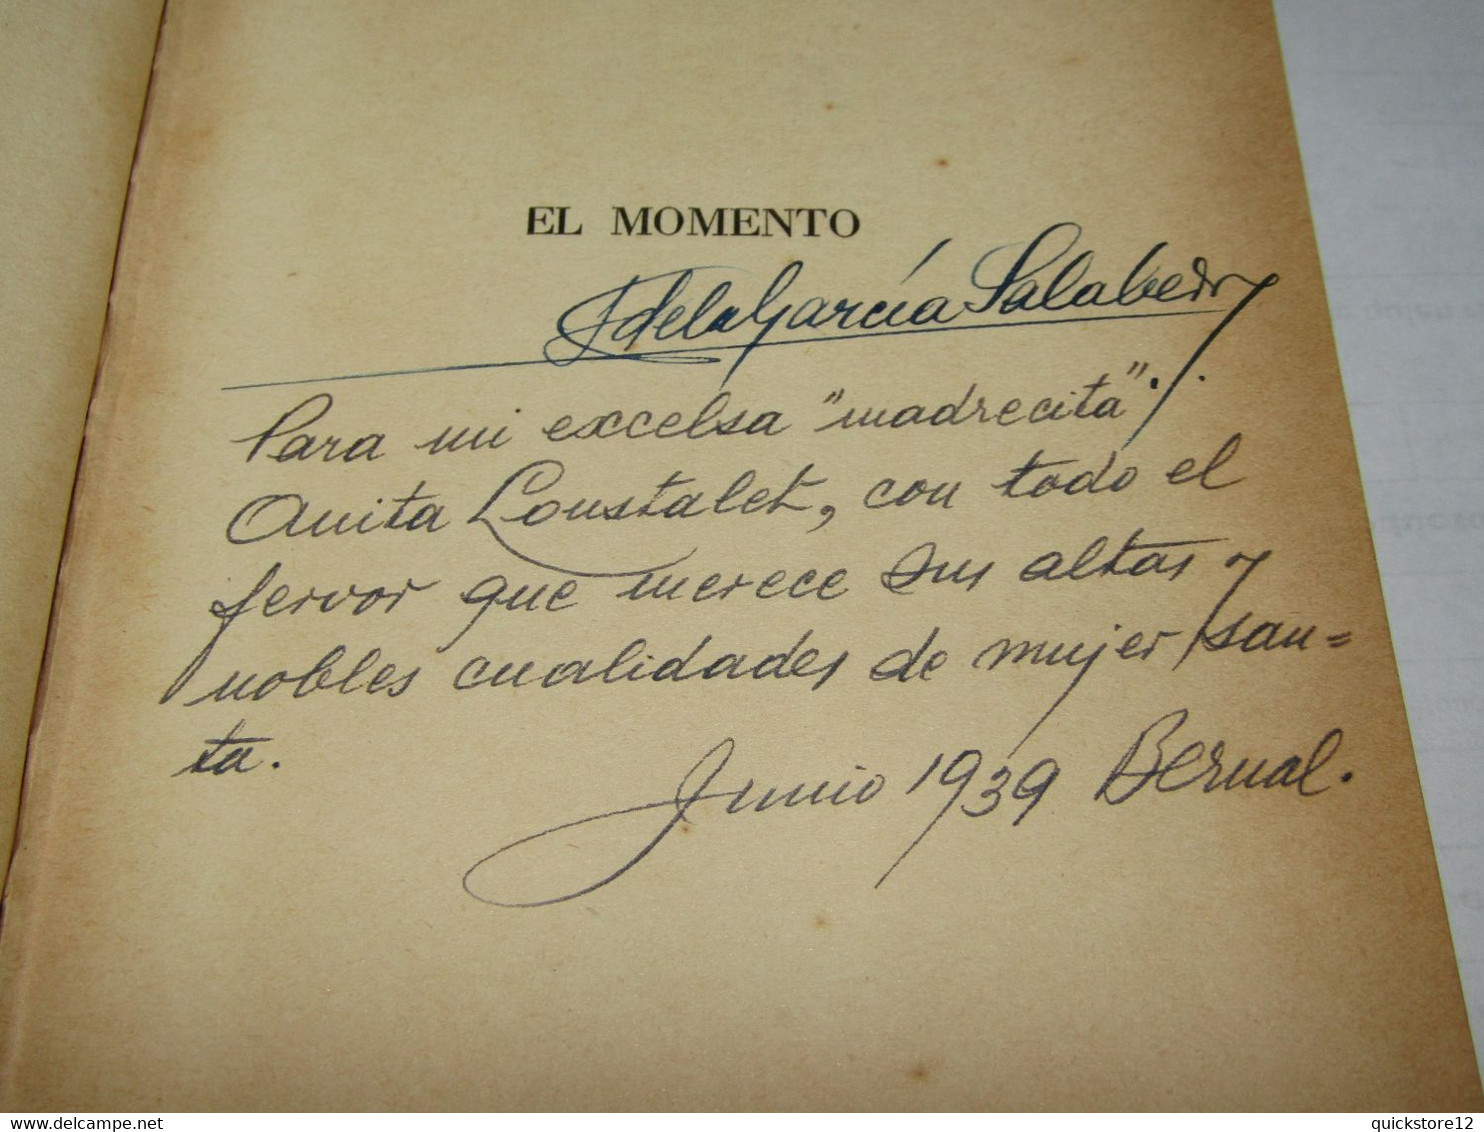 El Momento- Adela Garcia Salaberry AUTOGRAFIADO 1939 - 3043 - Poesia